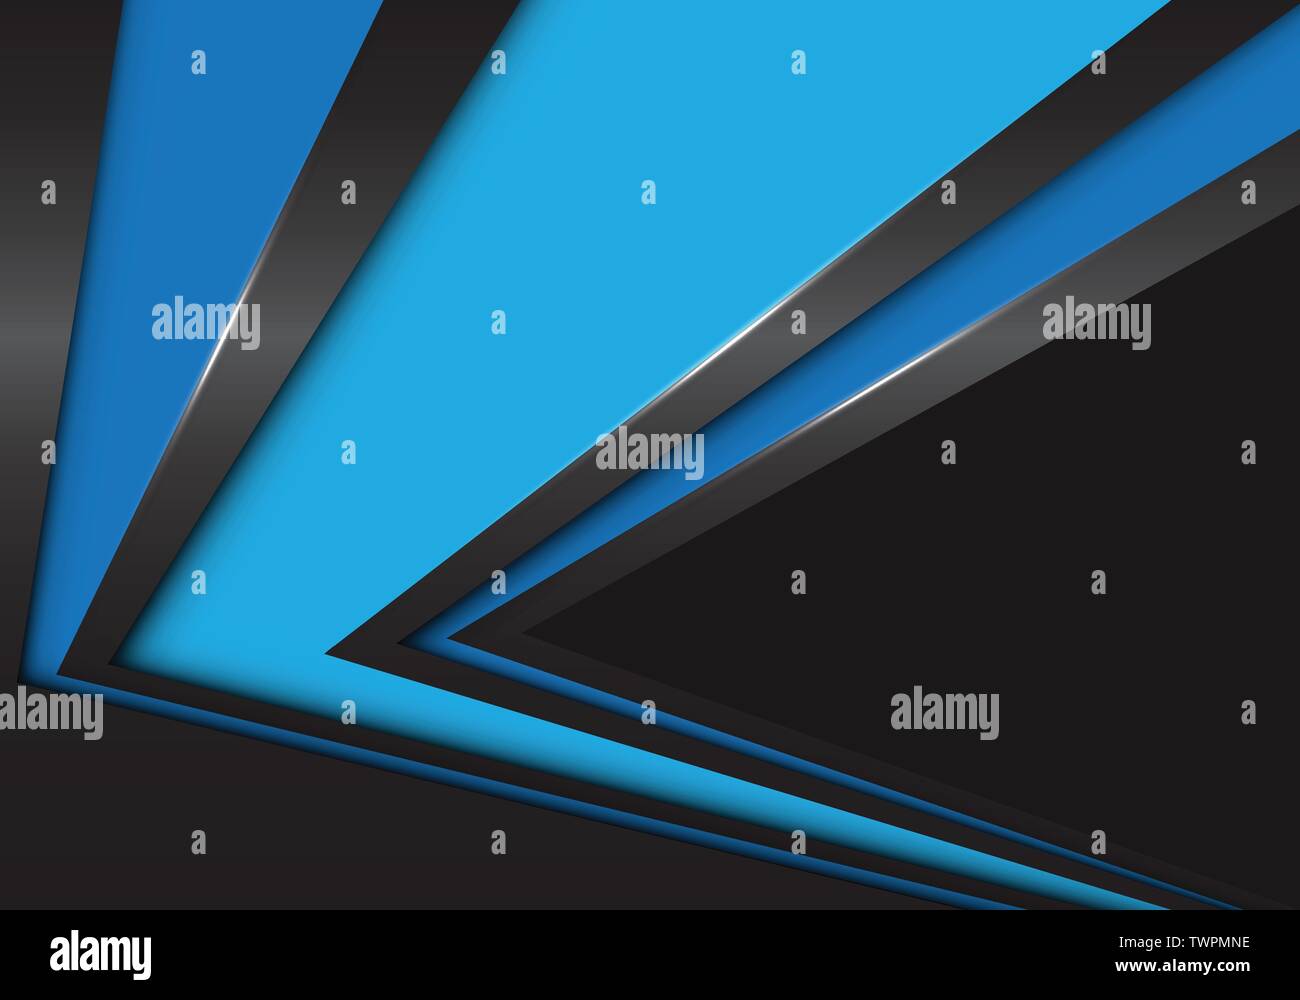 Résumé Direction de vitesse flèche bleue sur fond noir futuriste moderne design illustration vectorielle. Illustration de Vecteur